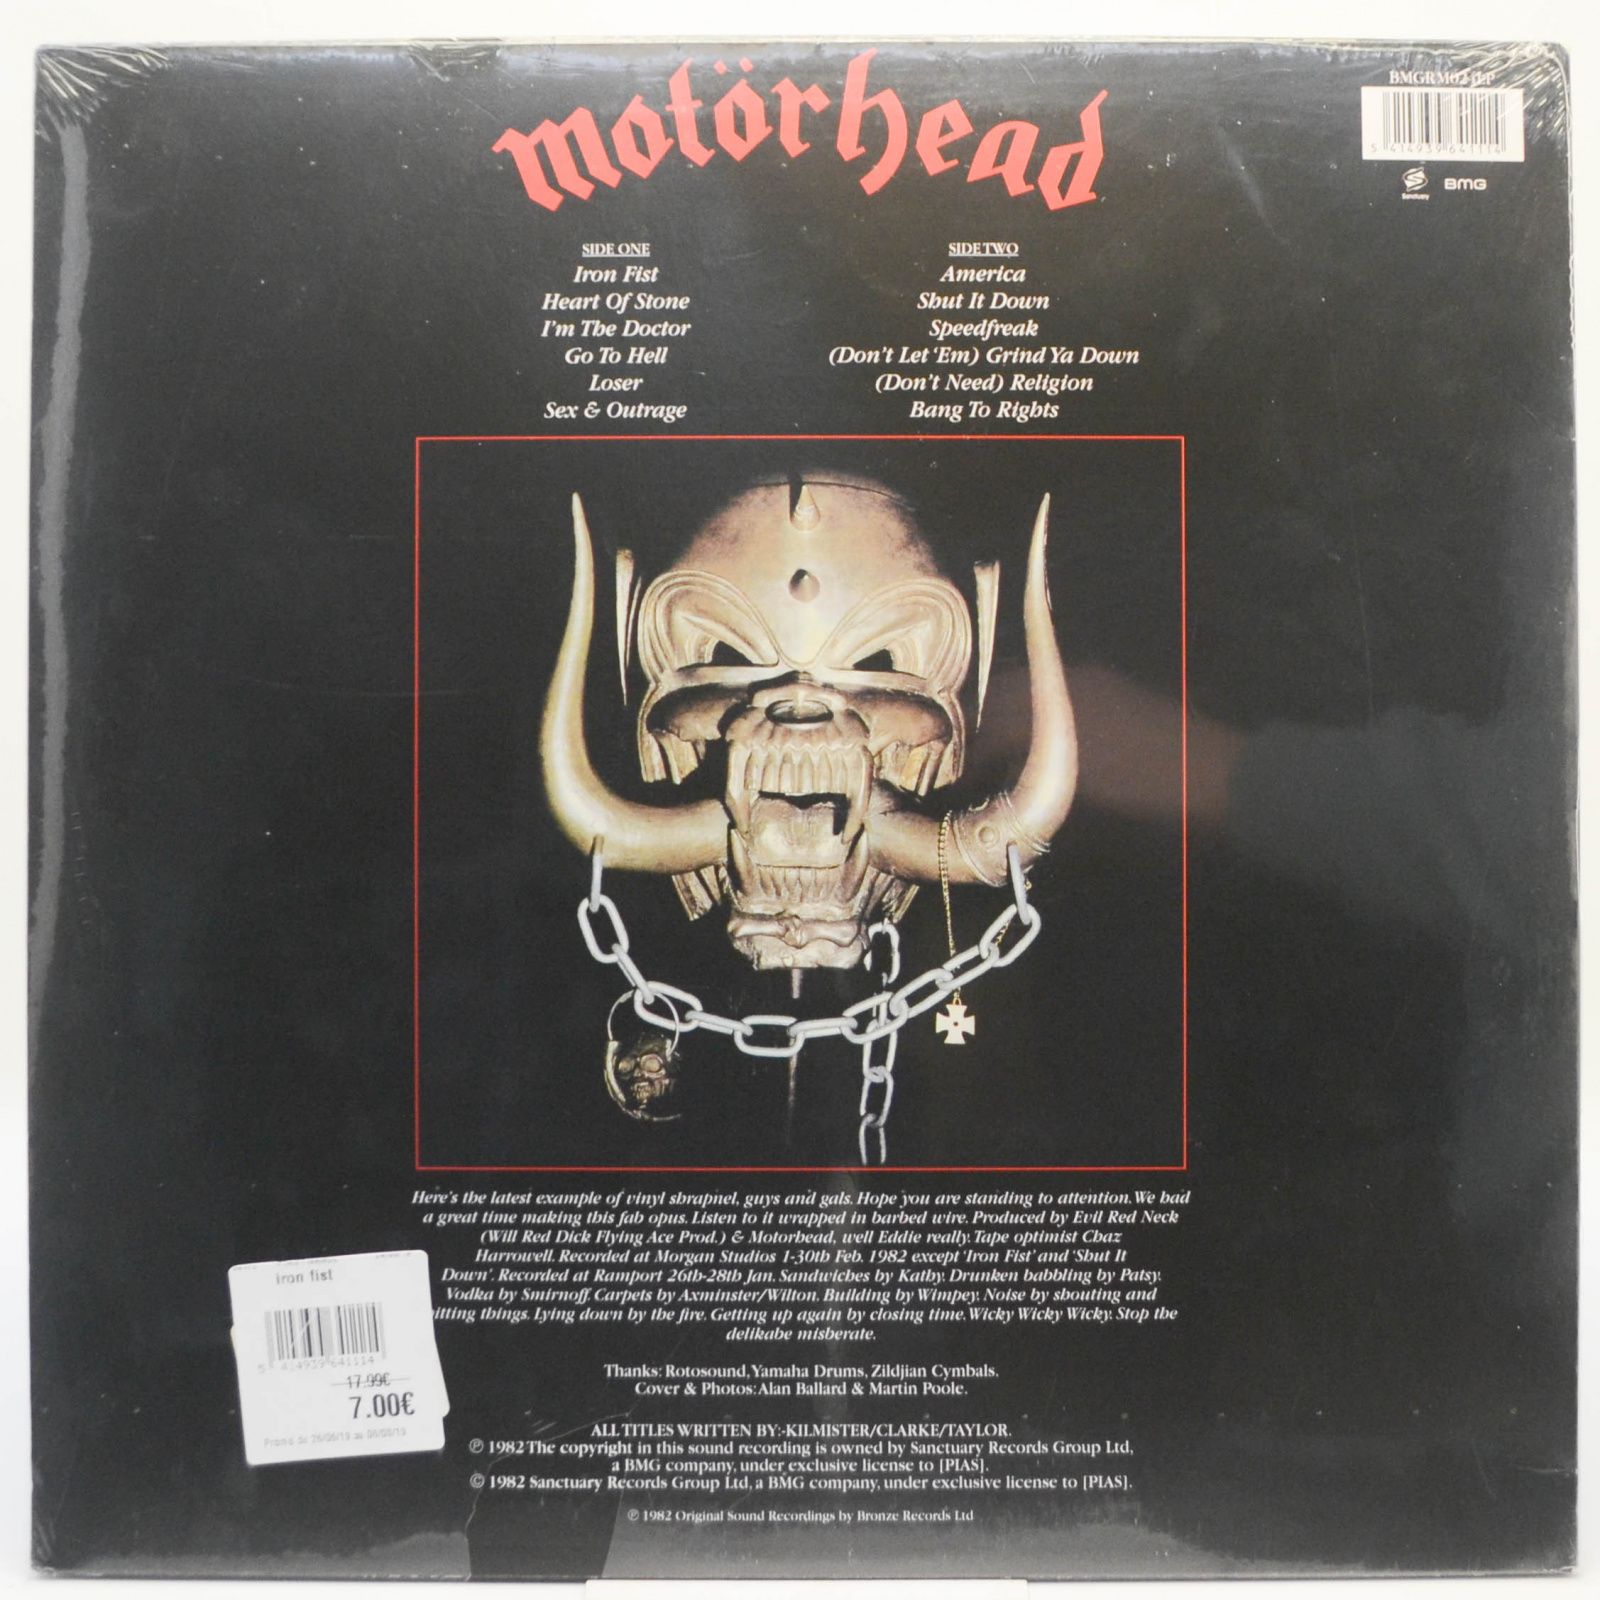 Motörhead — Iron Fist, 2015